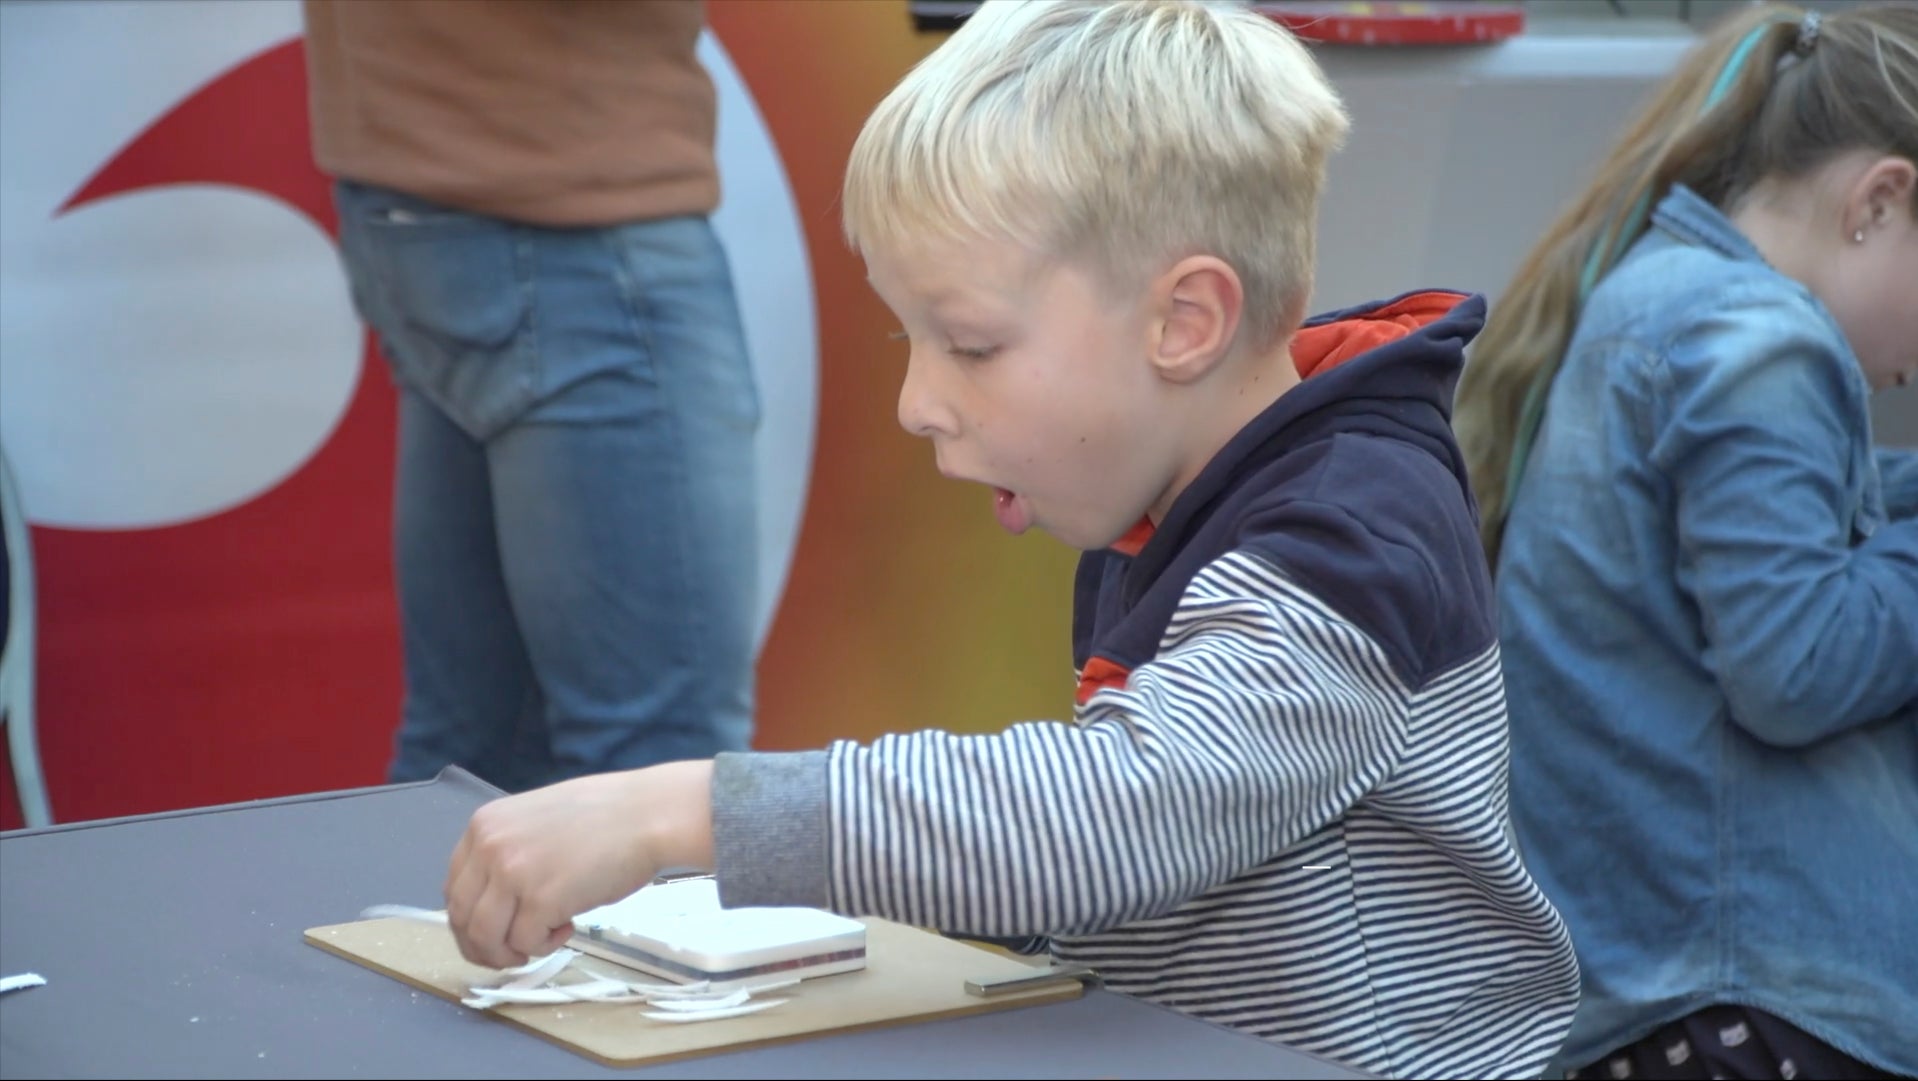 Video laden: Das Video zeigt Ausschnitte von der Nacht der Wissenschaft in Kiel, bei der Kinder Schnitzen nach Farben ausprobieren. Sie sind konzentriert und mit Begeisterung bei der Sache.